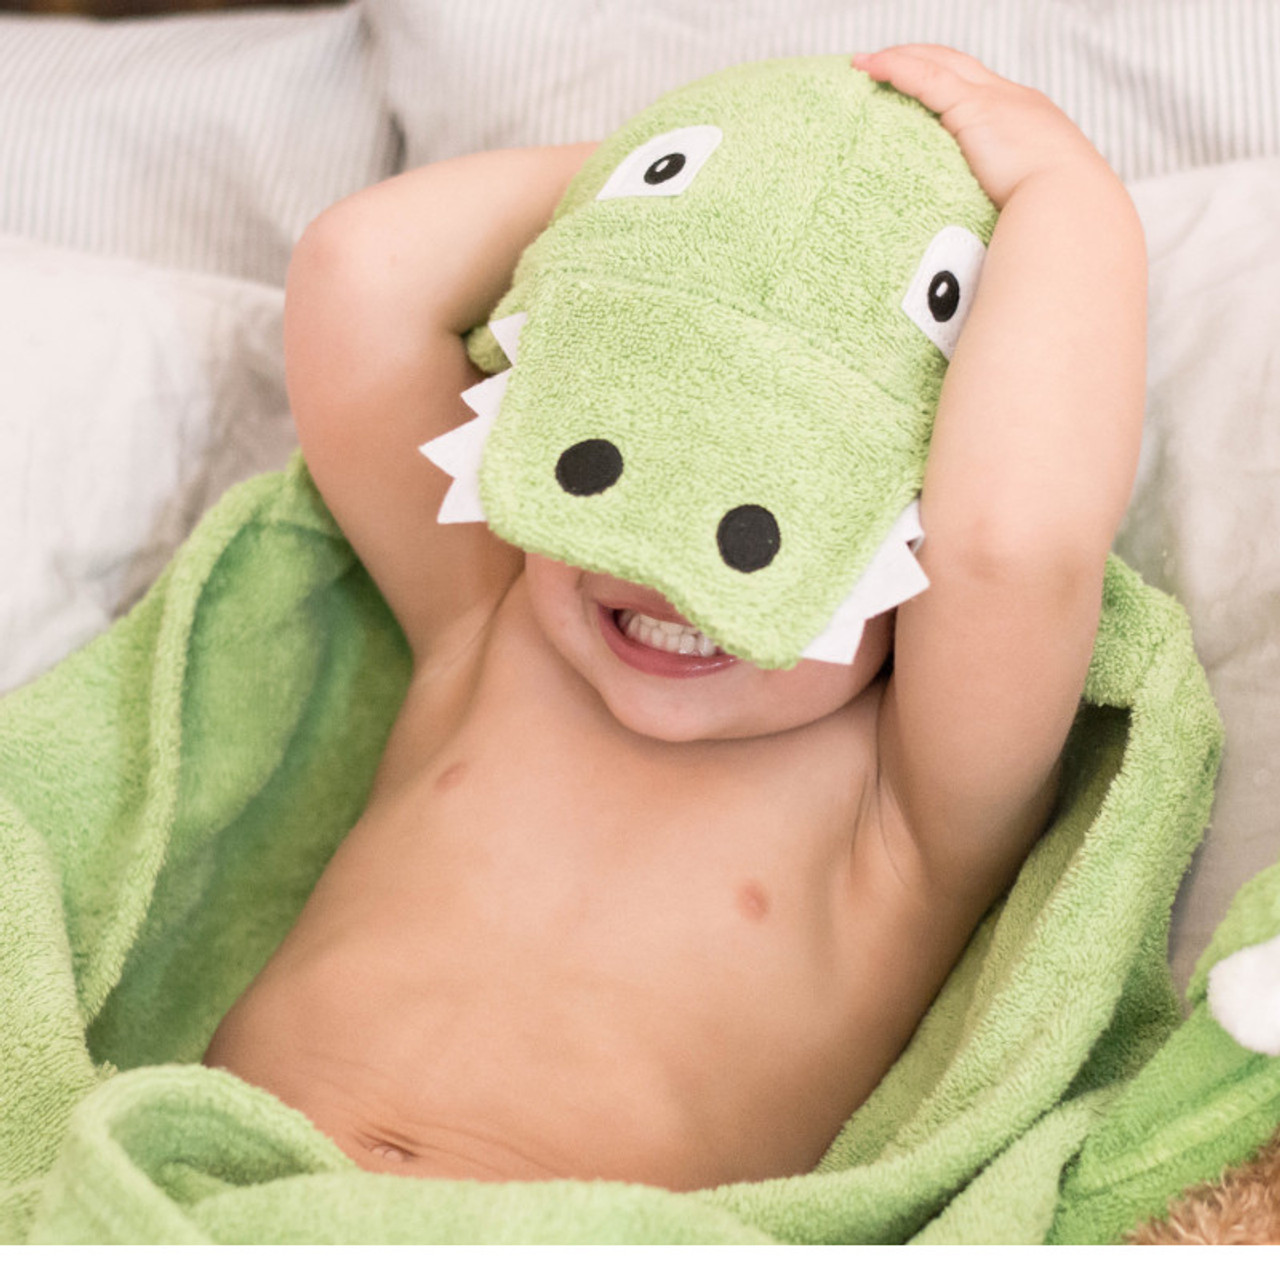 Kids Hooded Towel Beach Towel Alligator Towel Kid Towel Bath Towel Hooded Towel Gift for Kids Alligator Hooded Towel